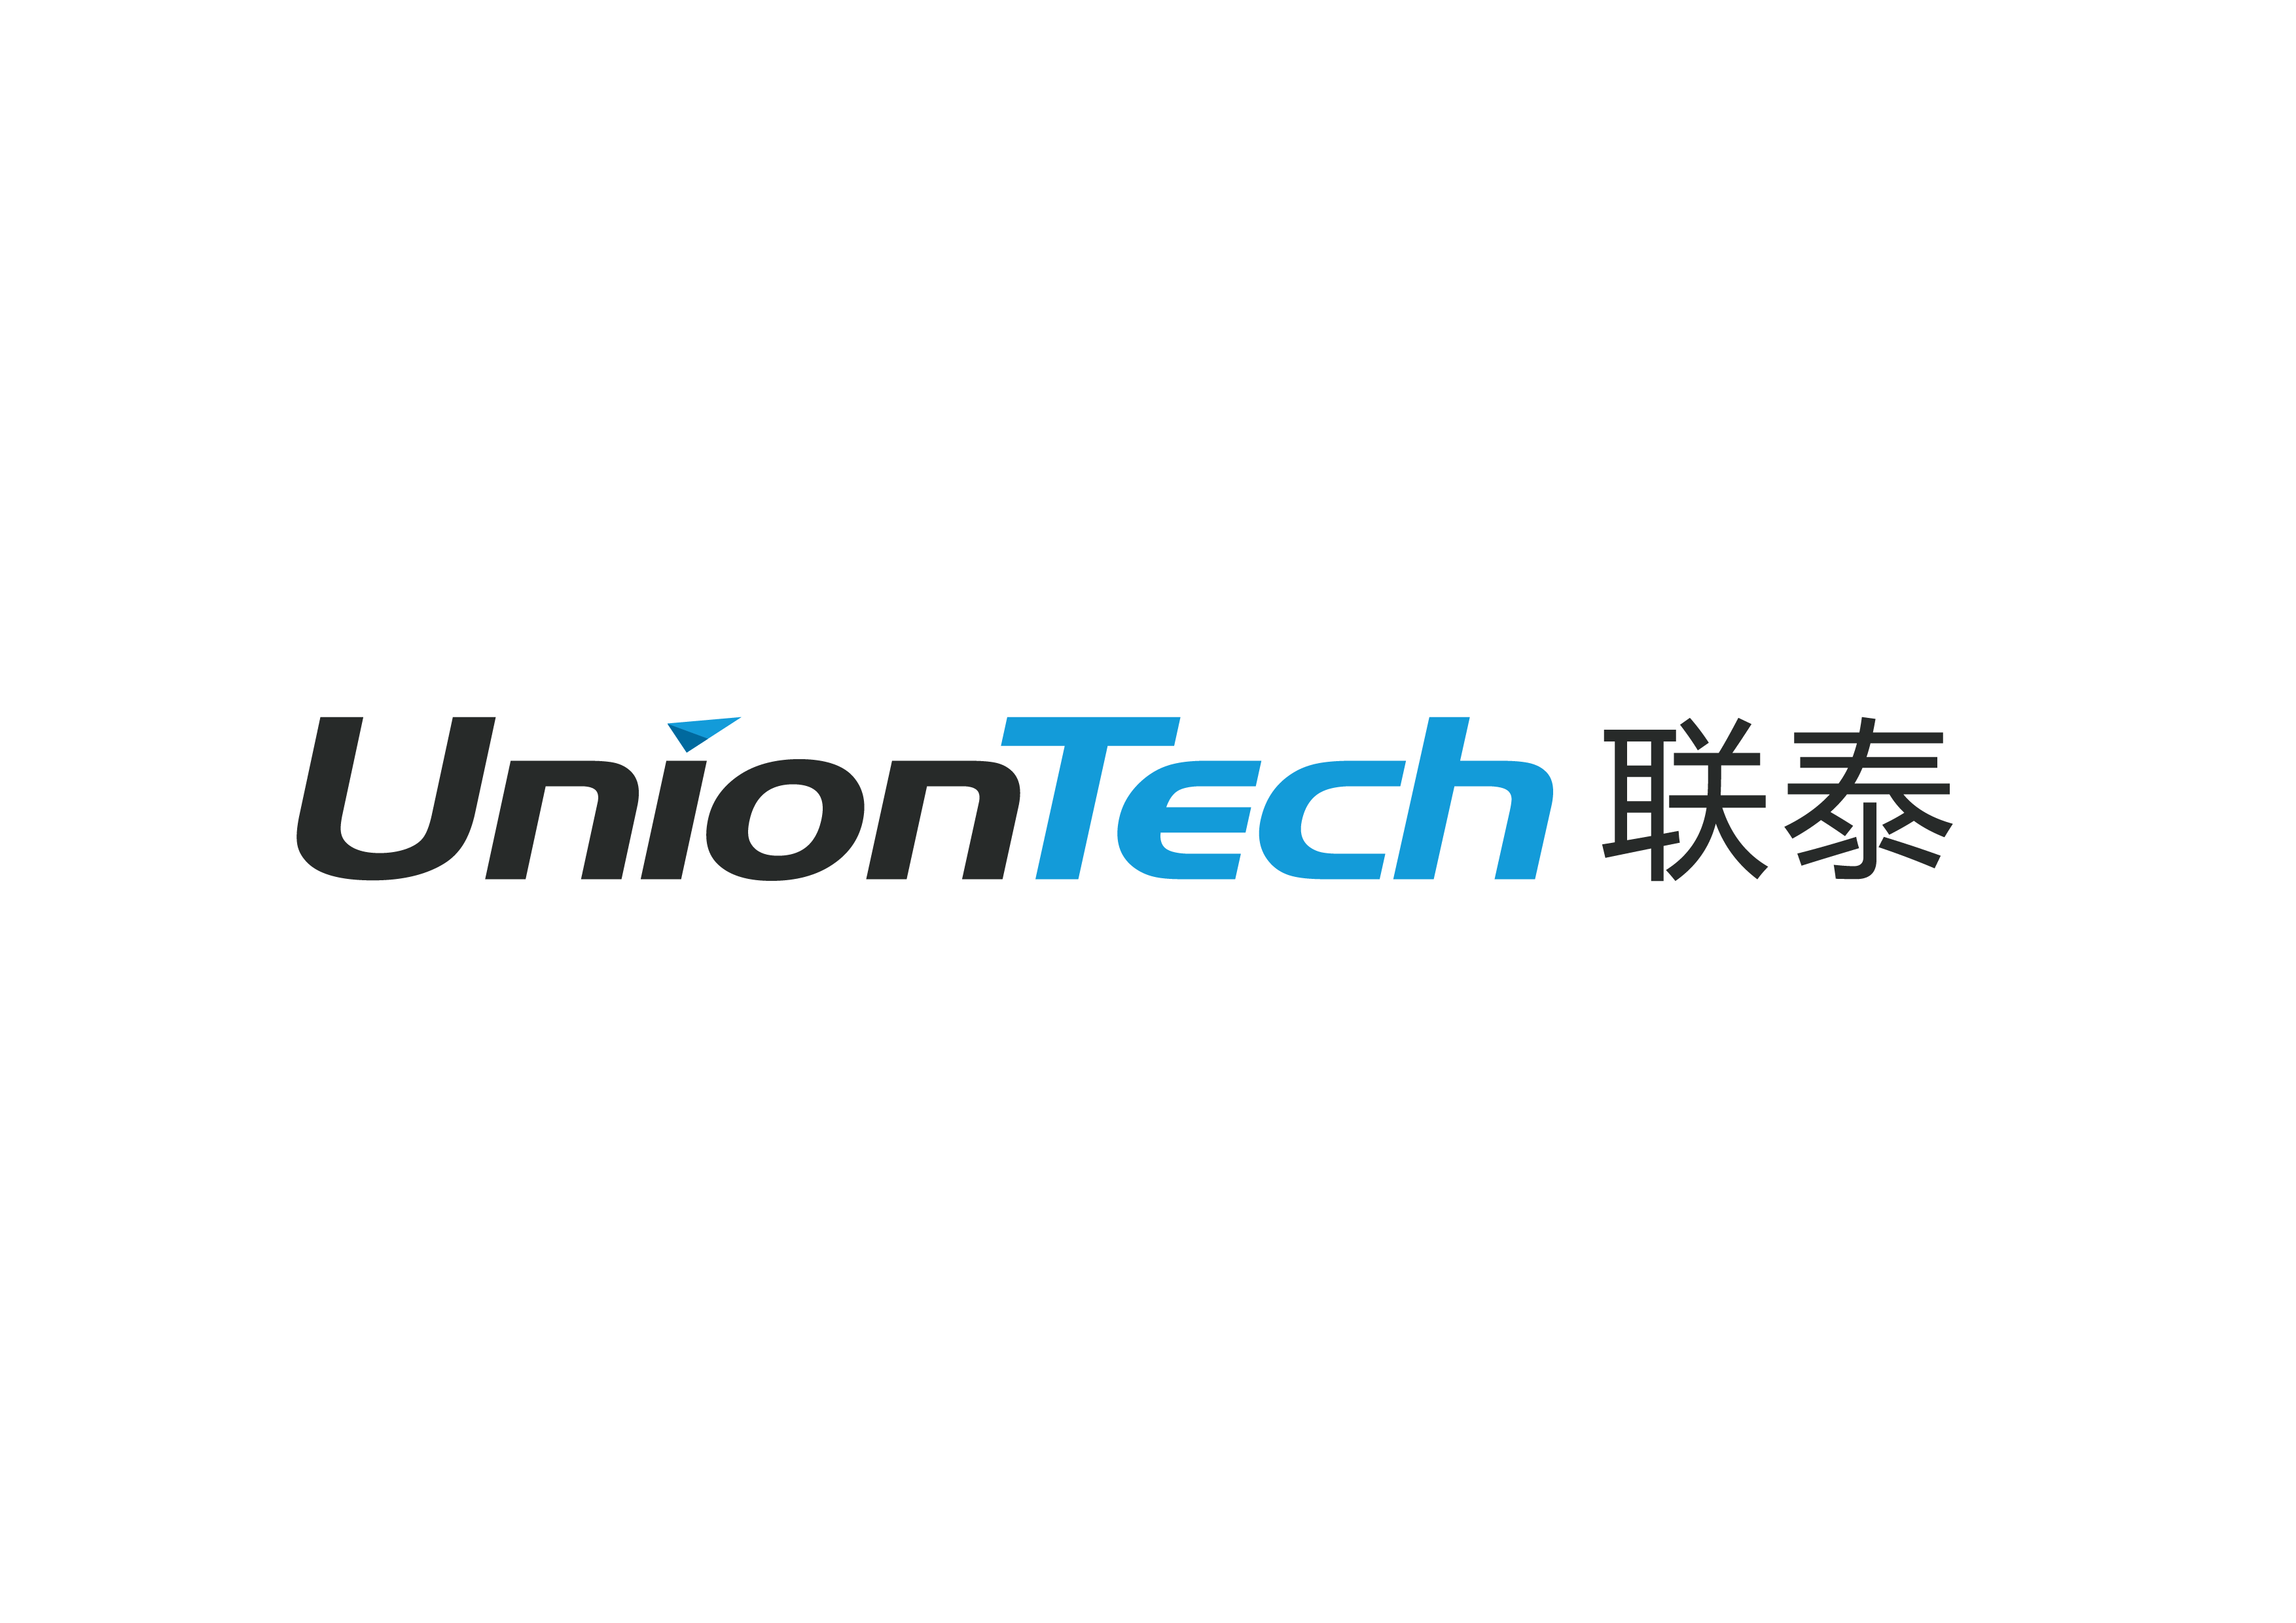 上海聯泰科技股份有限公司